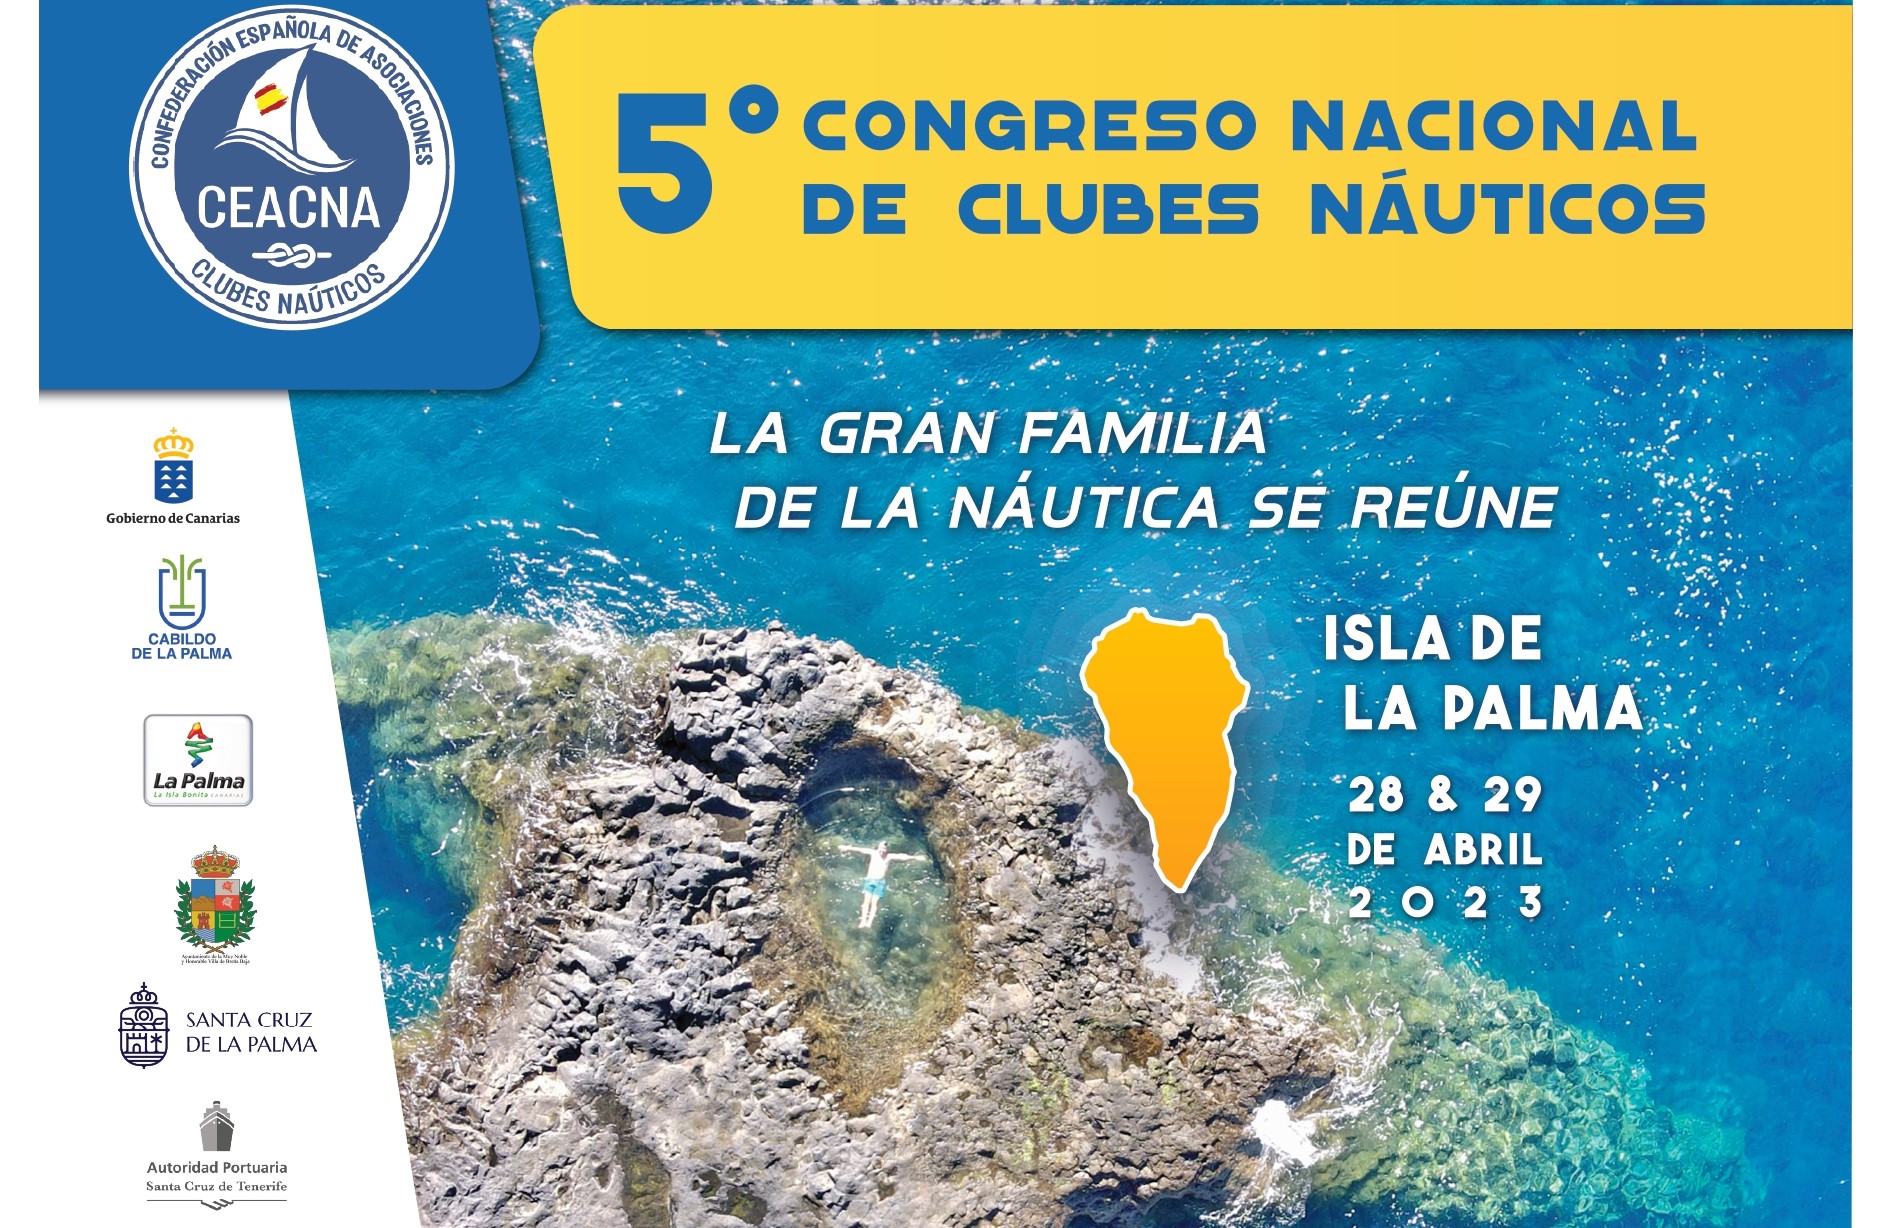 Congreso Nacional de Clubes Náuticos en La Palma / CanariasNoticias.es